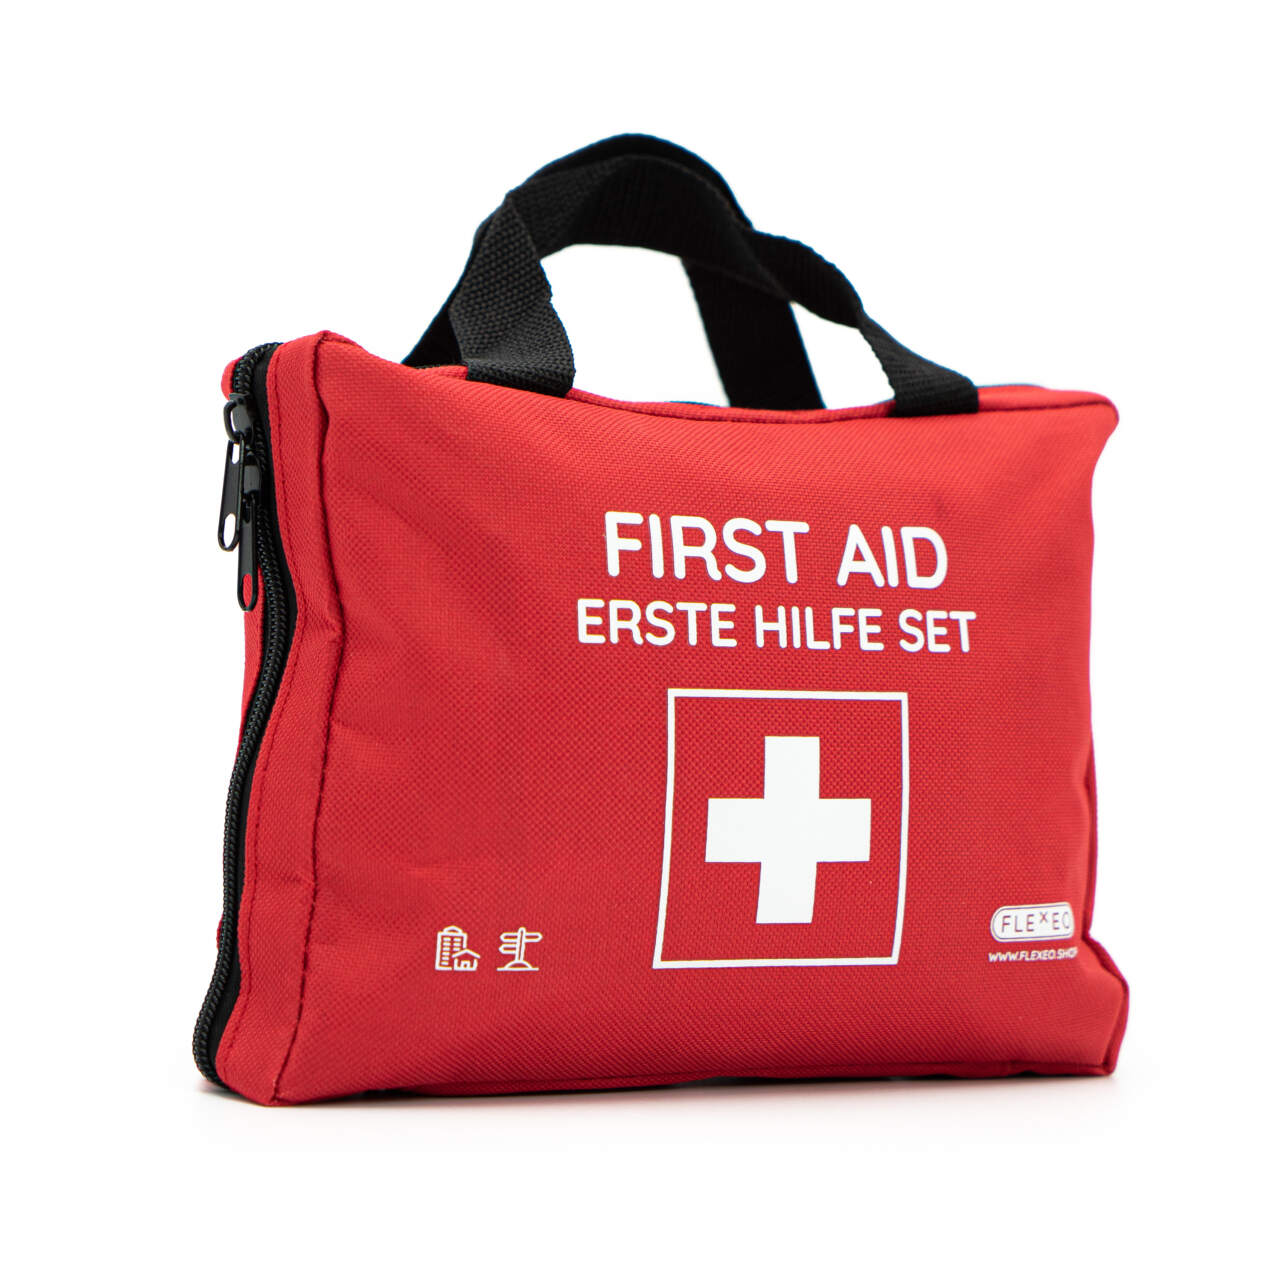 Erste Hilfe-Set Kinder daheim, Reißverschlusstasche, orange, Nylongewebe,  240x170mm